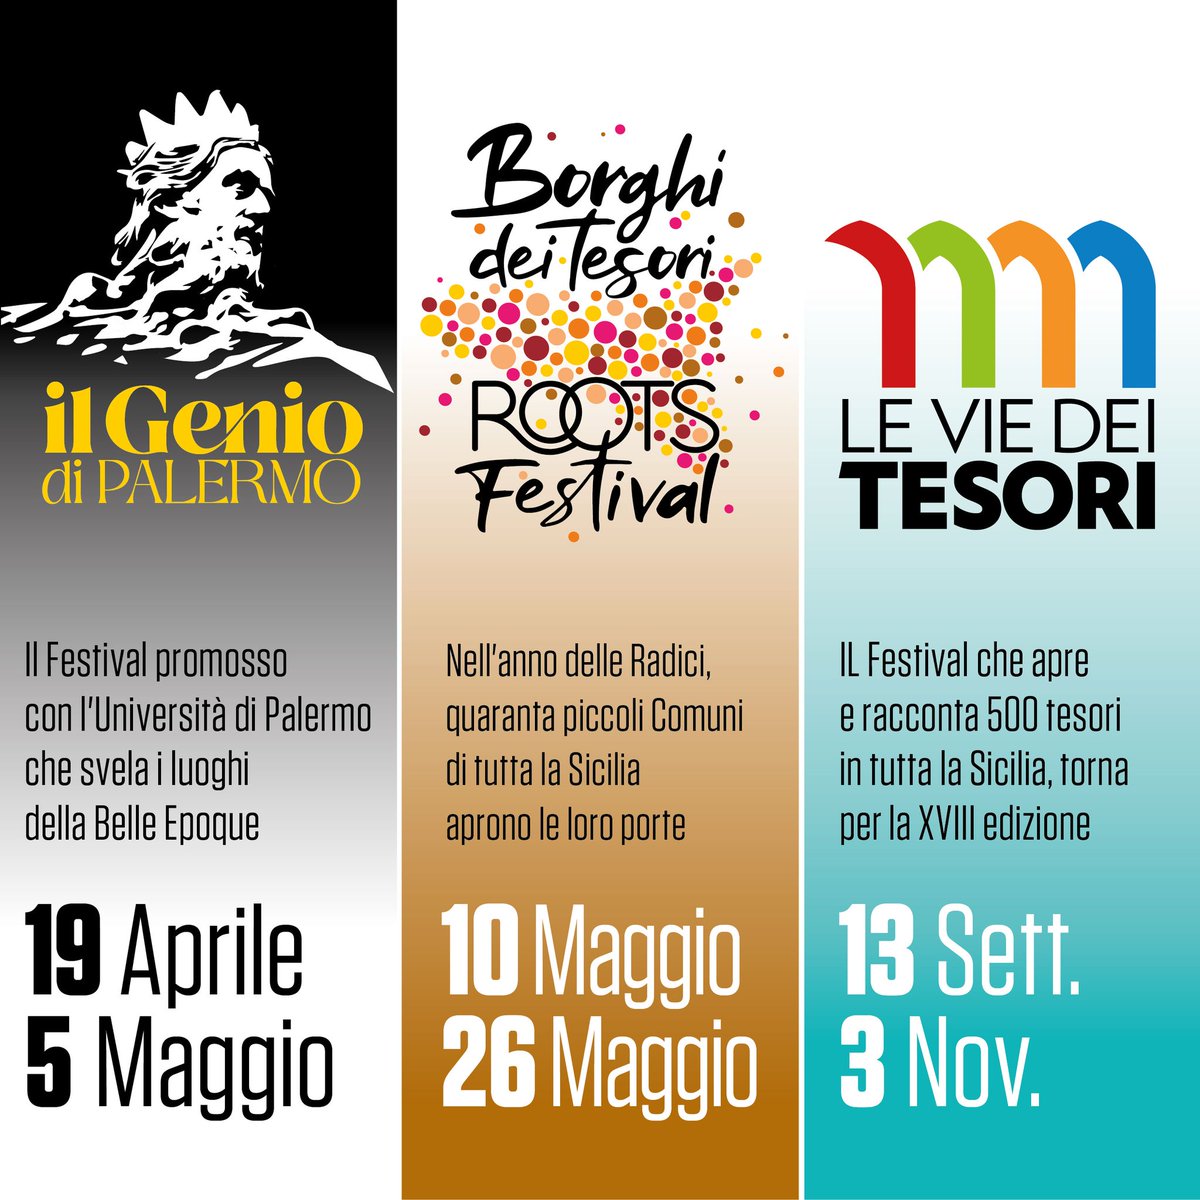 Il genio di Palermo 19 Aprile - 5 Maggio Roots Festival 10 Maggio - 26 Maggio Le Vie dei Tesori 13 Settembre - 3 Novembre 2024 #eventisicilia24 #visitsicilyinfo #sicilia #sicily @LeViedeiTesori